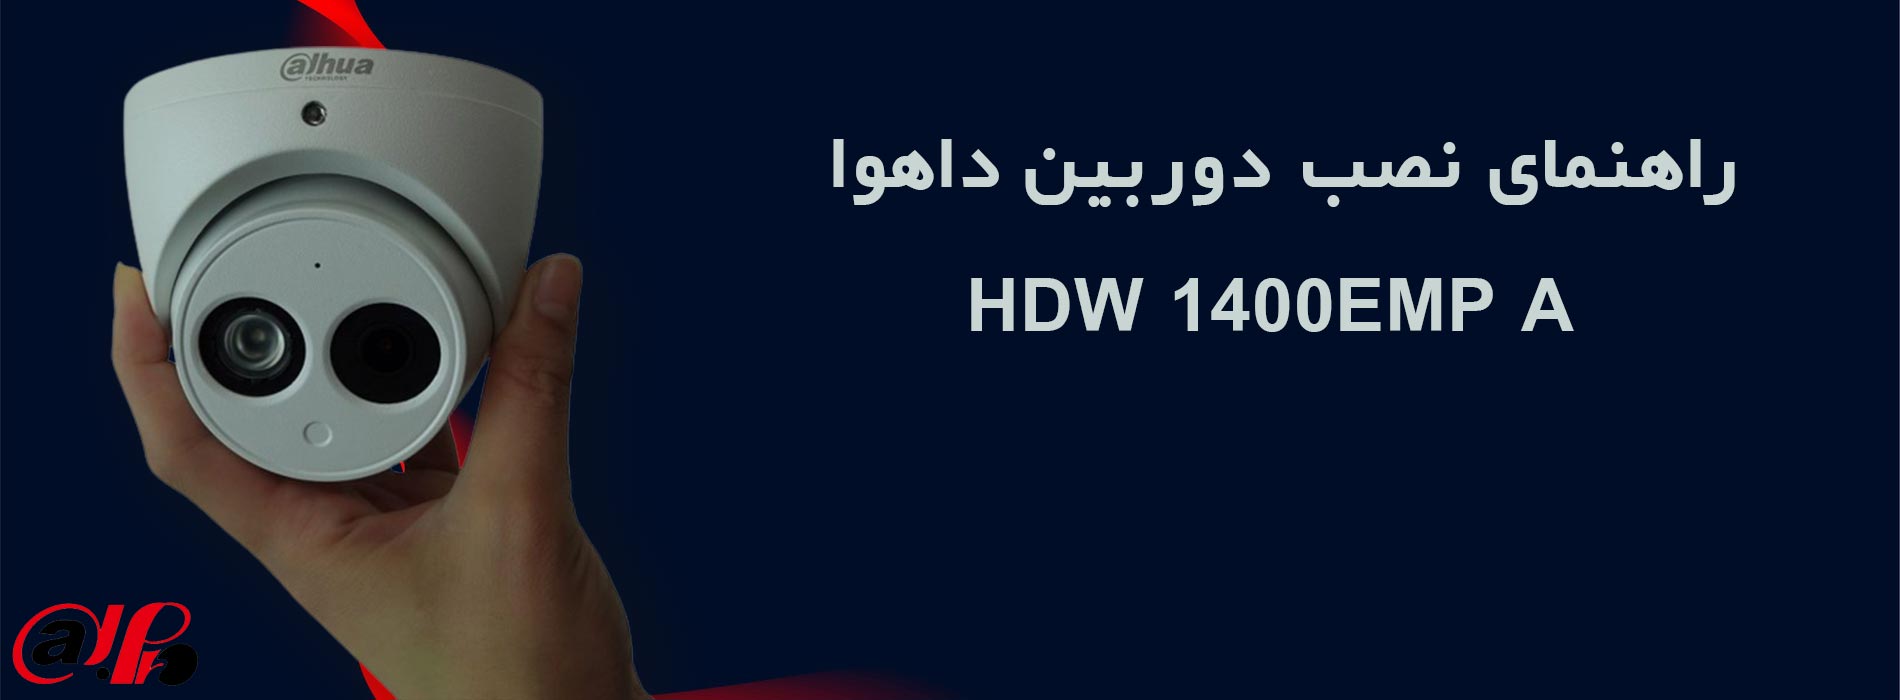 راهنمای نصب دوربین داهوا HDW 1400EMP A